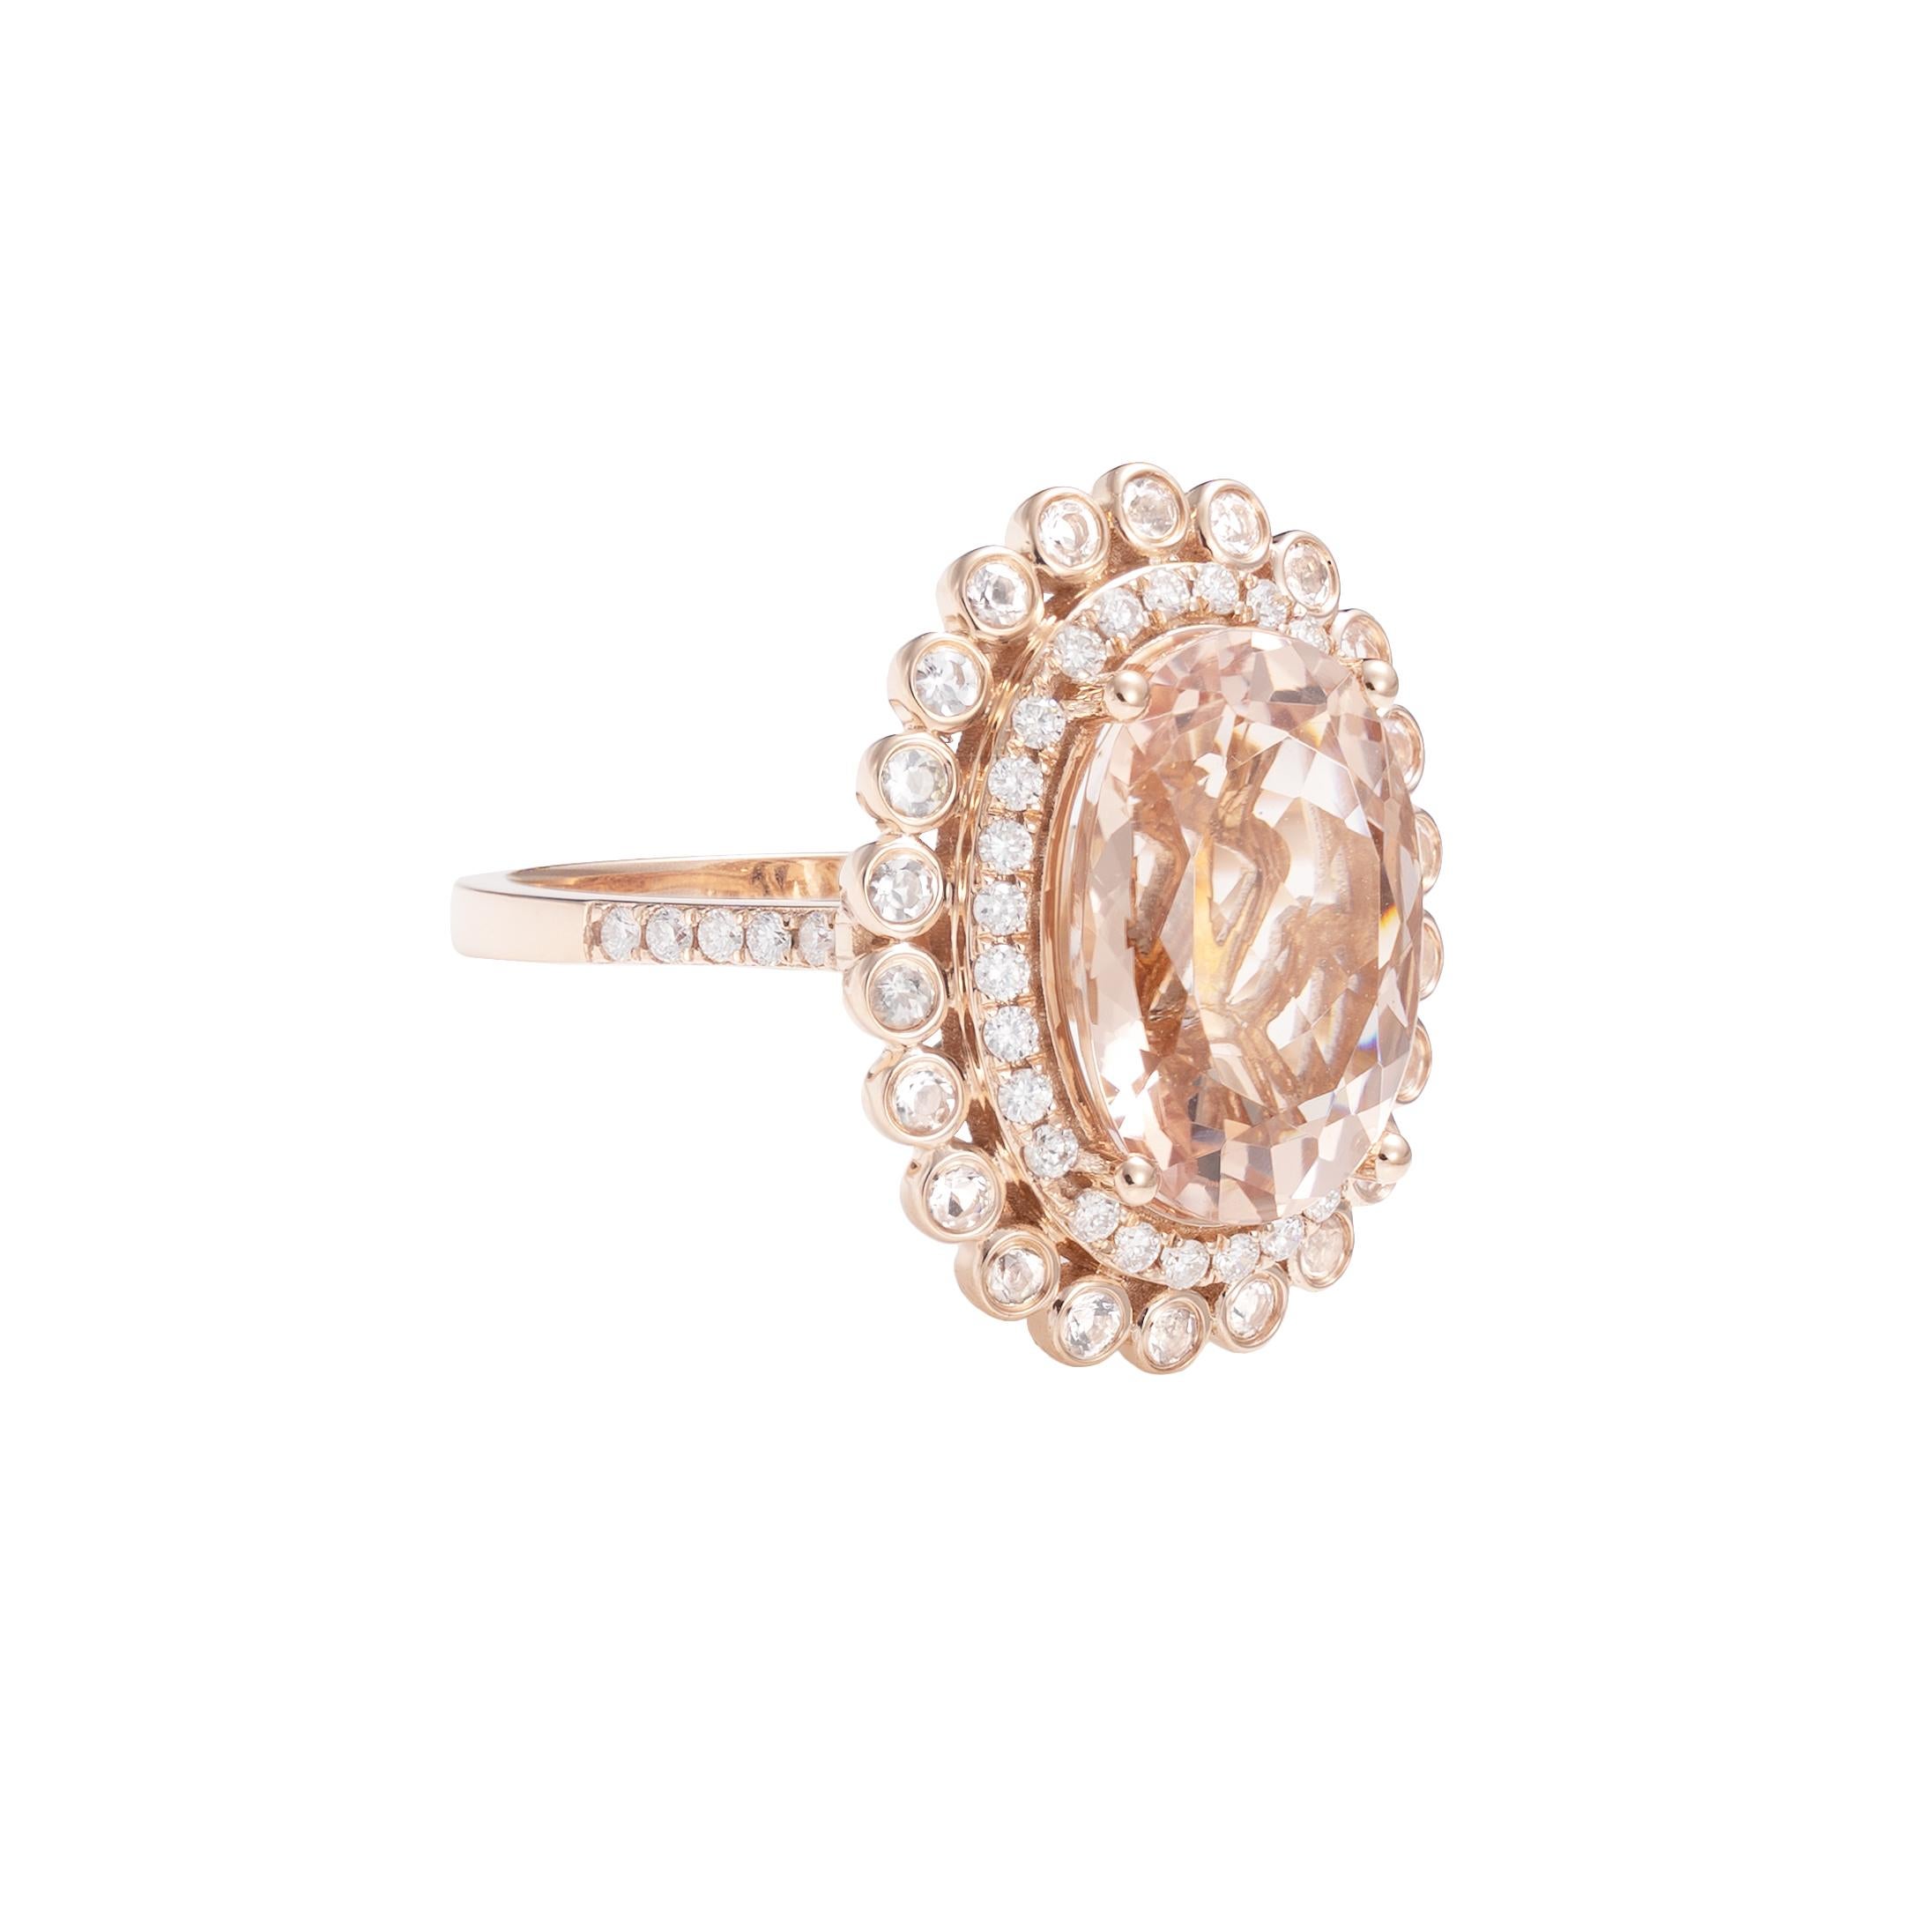 Diese Kollektion bietet eine Reihe von prächtigen Morganiten! Diese Ringe aus Roségold sind mit weiteren Morganiten und Diamanten verziert und wirken klassisch und elegant. 

Klassischer Morganit-Ring aus 18 Karat Roségold mit Diamanten und